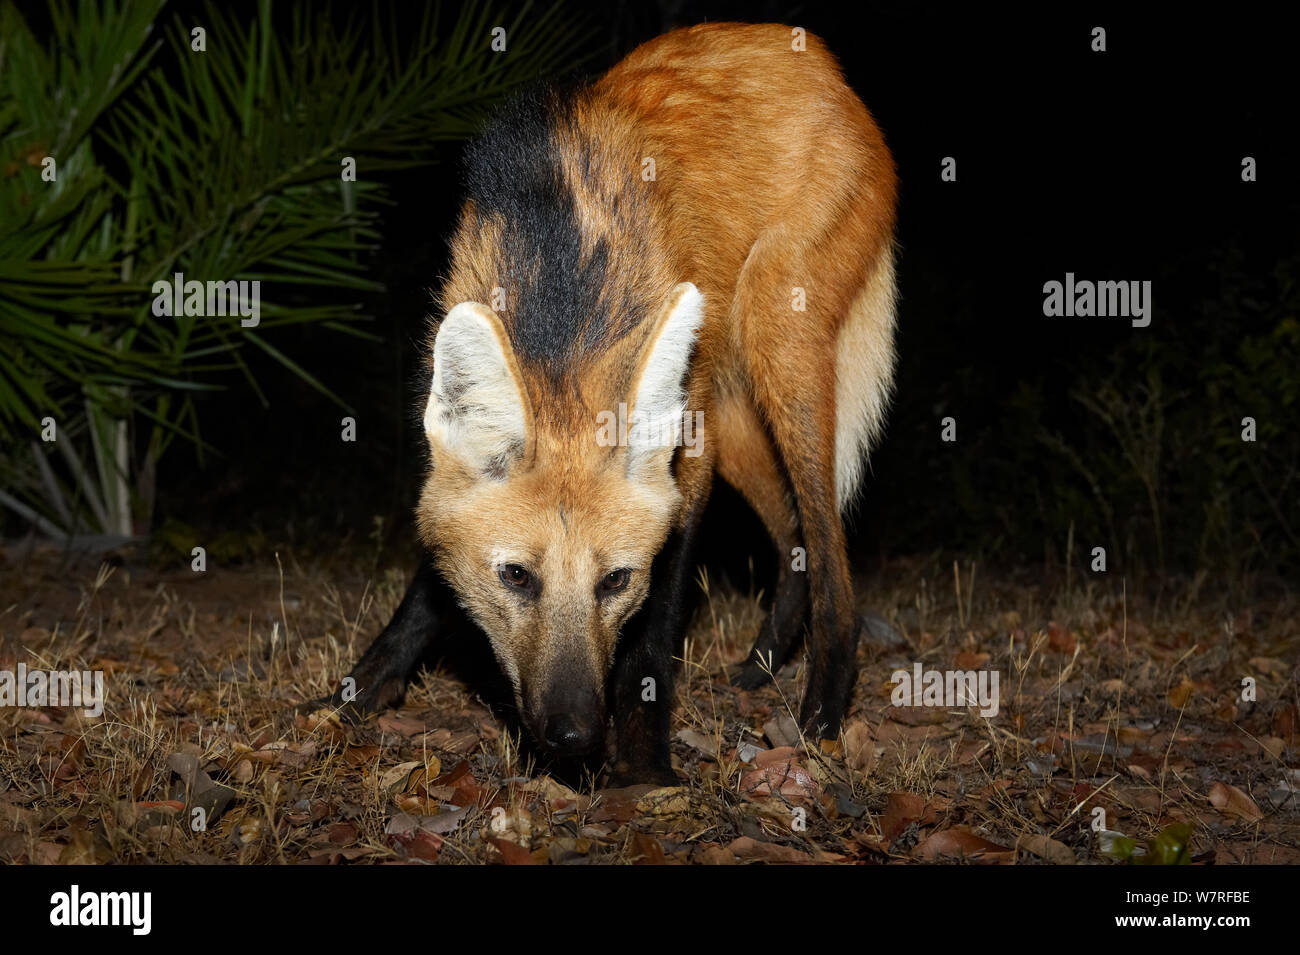 Lobo de crin (Chrysocyon brachyurus) buscando comida, Piauí, Cerrado, Brasil, América del Sur Foto de stock